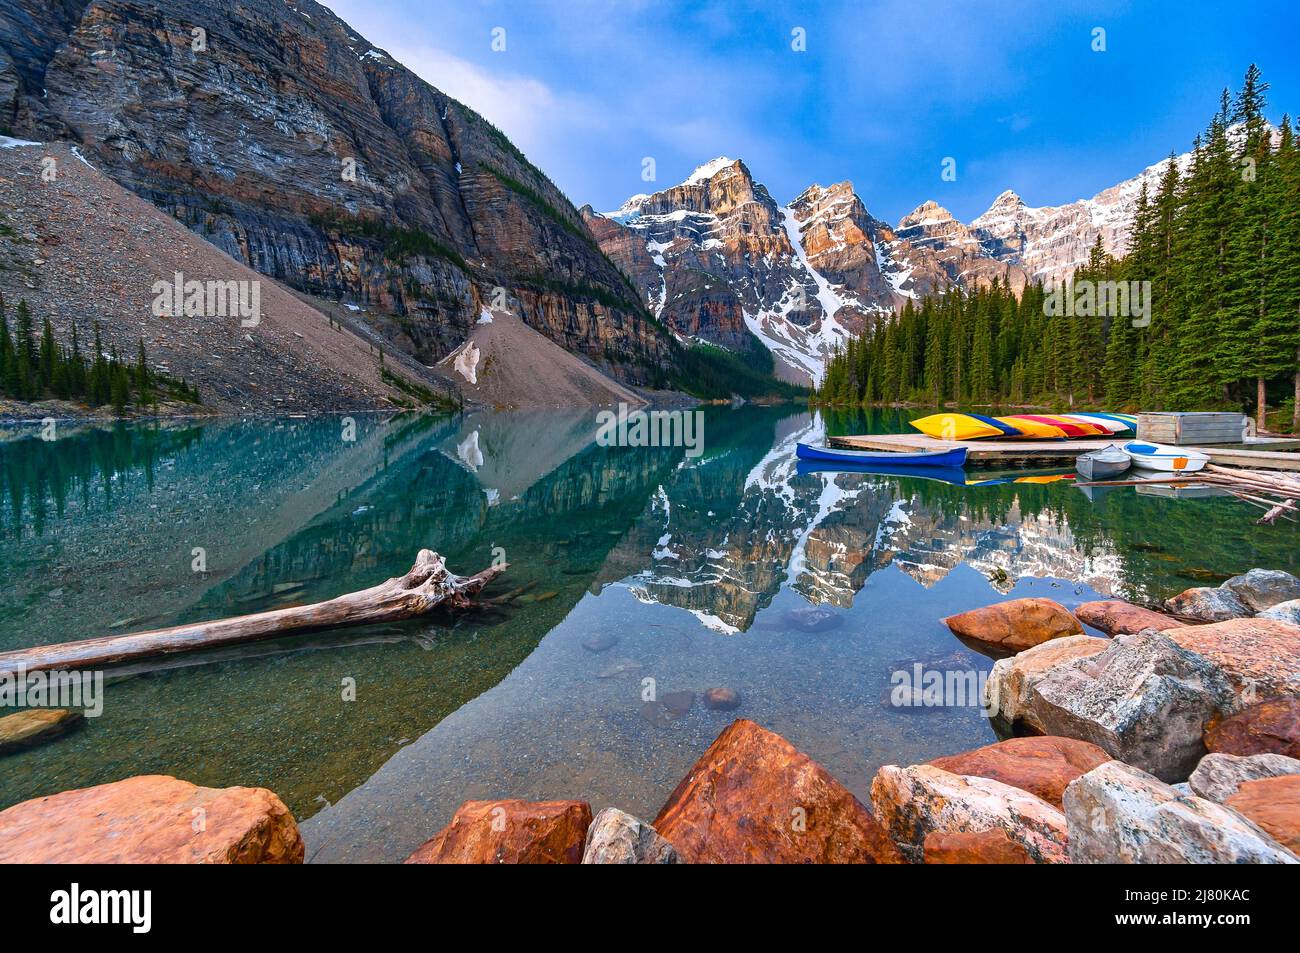 Réflexion et canoës du lac Moraine, Rocheuses canadiennes, parc national Banff, Alberta, Canada Banque D'Images